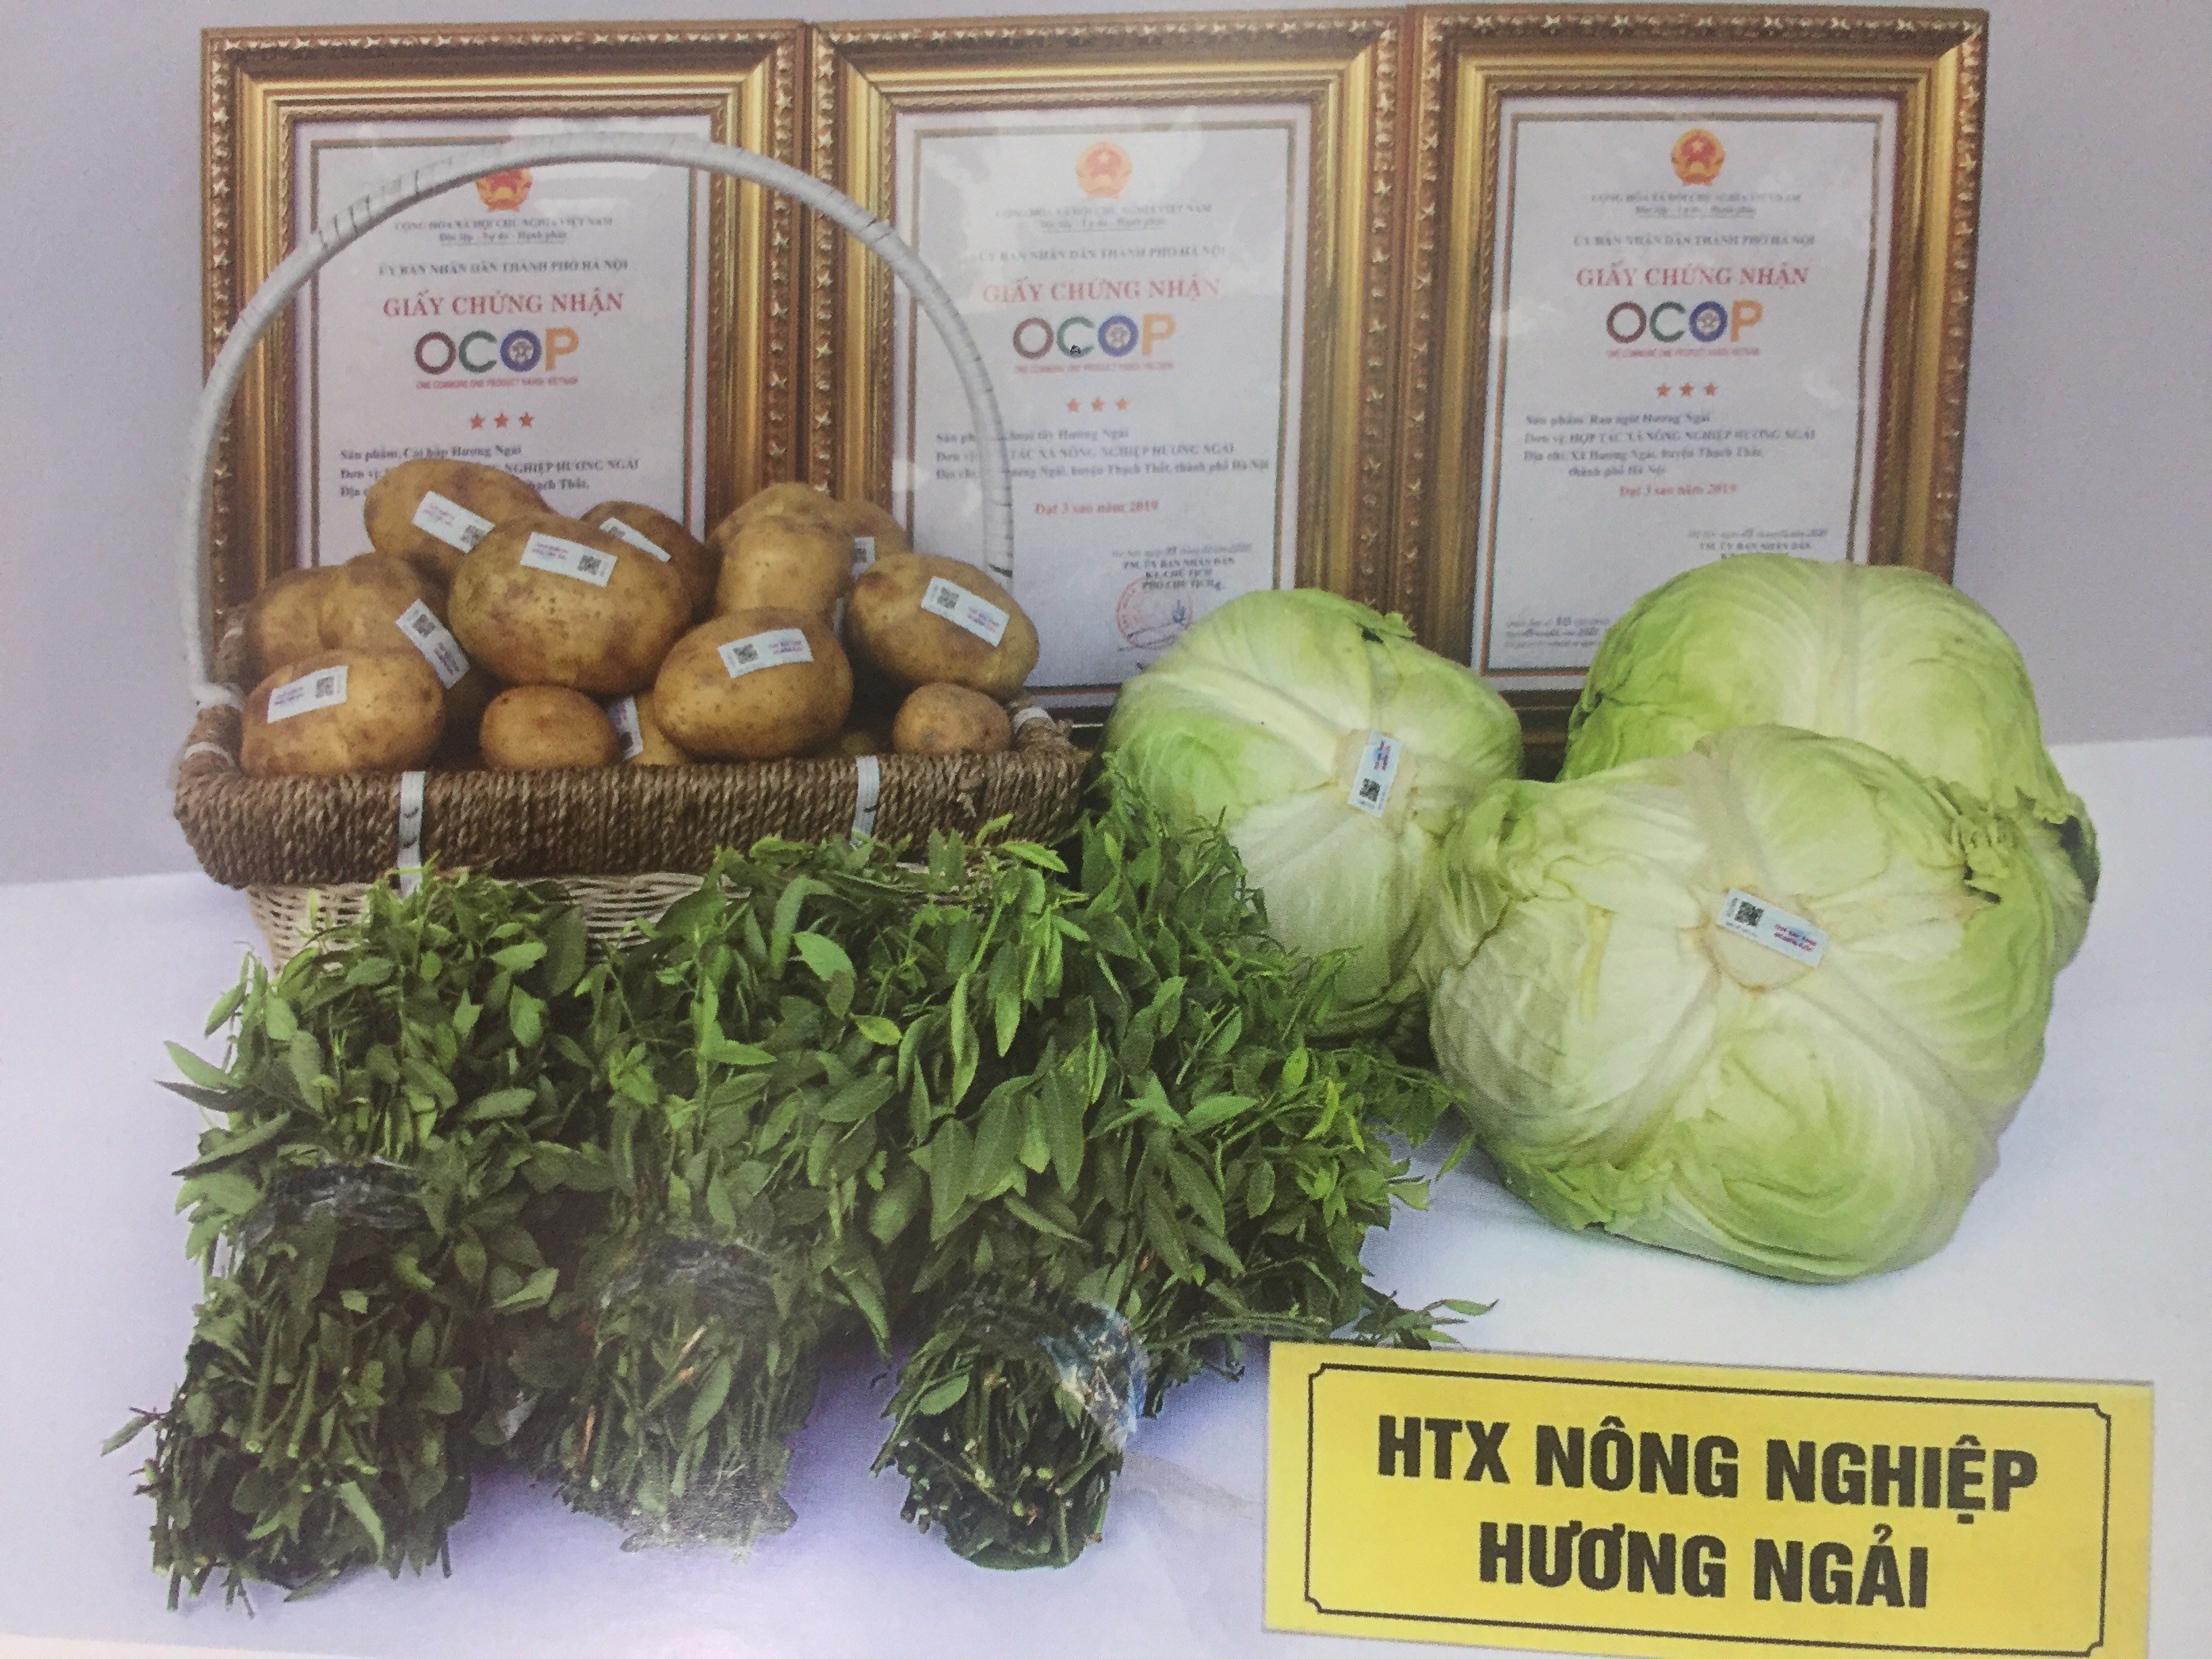 Sản phẩm OCOP 3 sao của Hợp tác xã nông nghiệp Hương Ngải